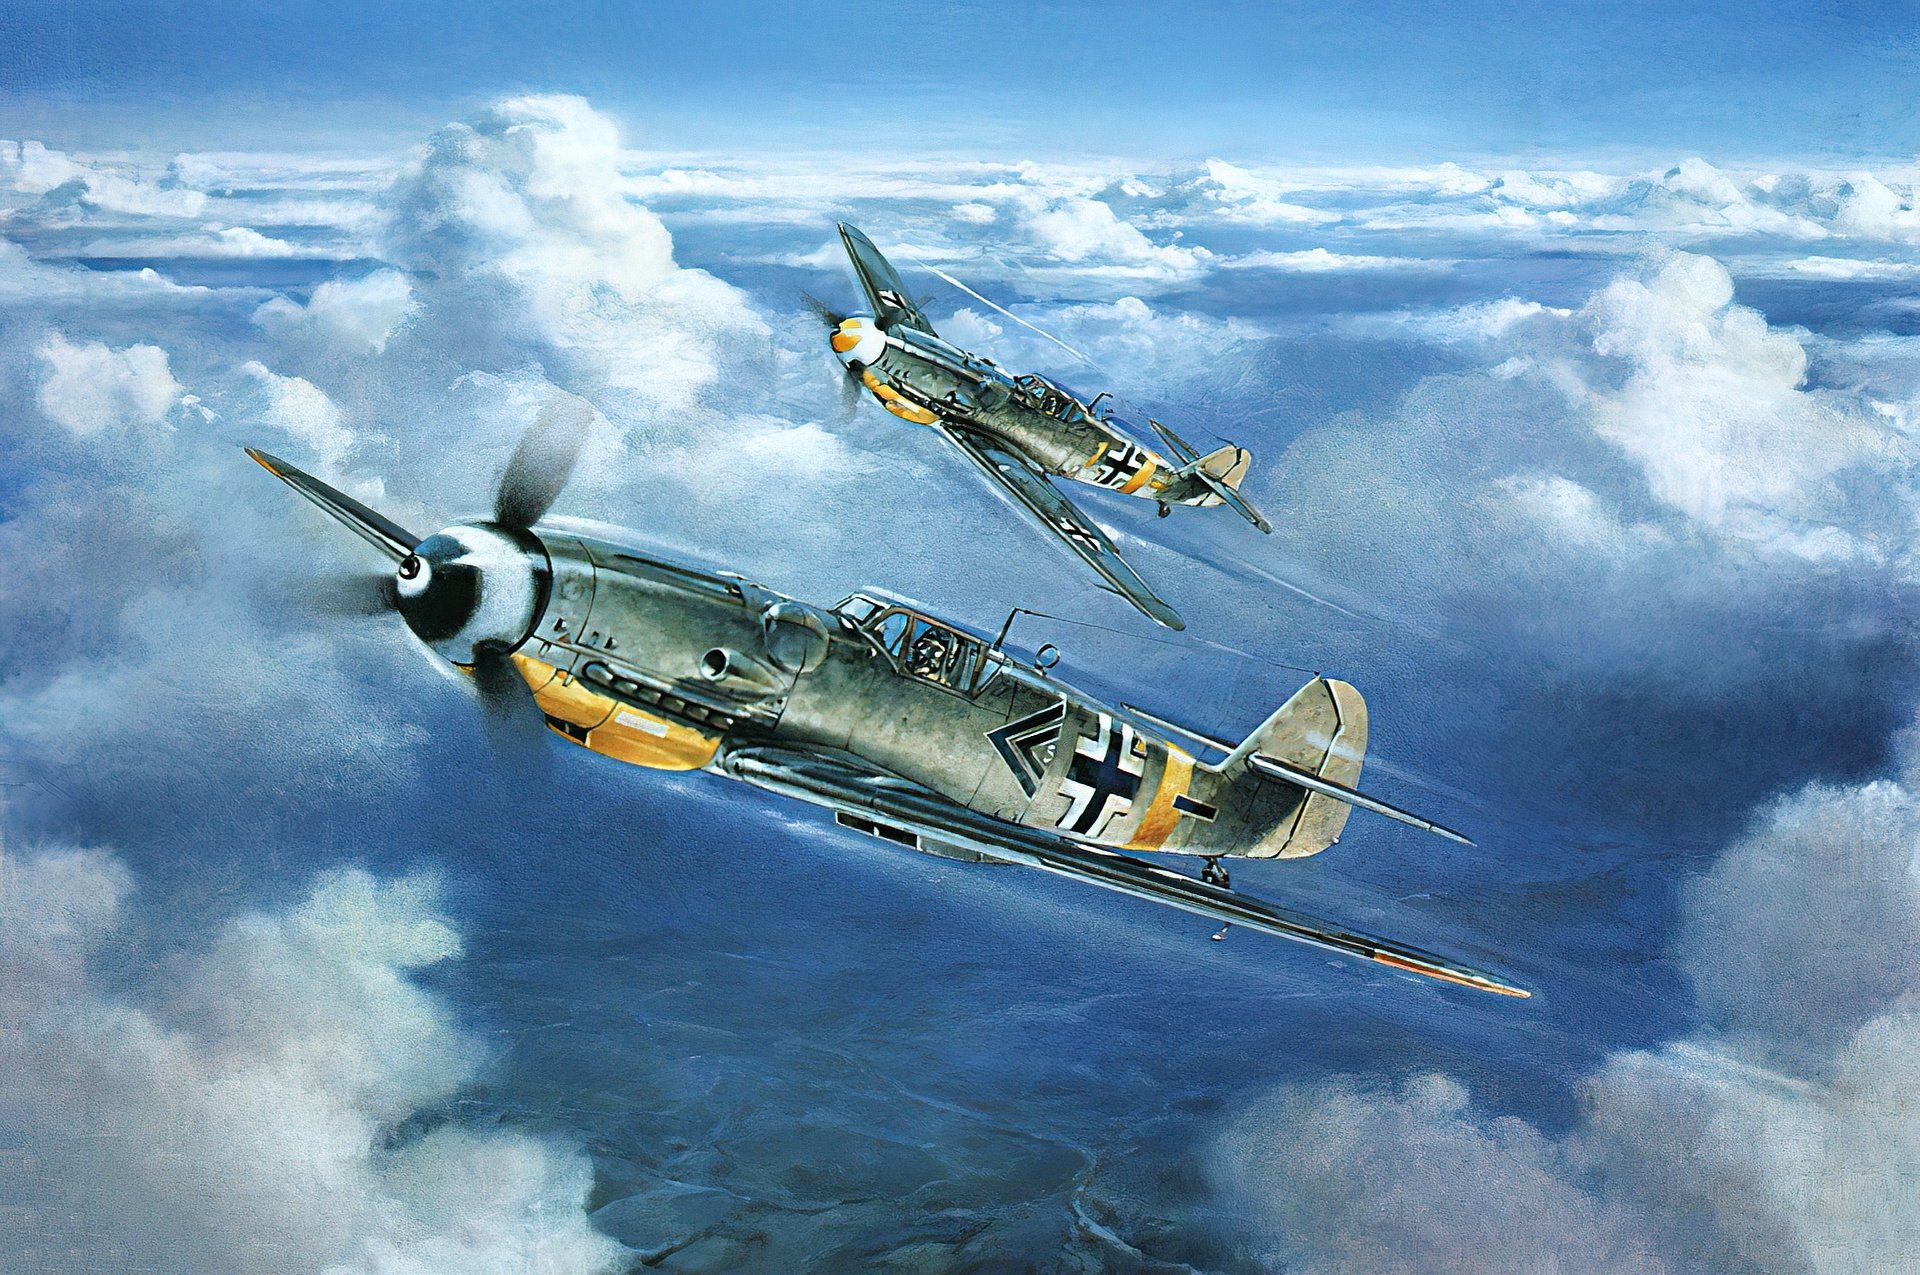 Messerschmitt Bf 109 Hd Wallpaper Background Image 1920x1275